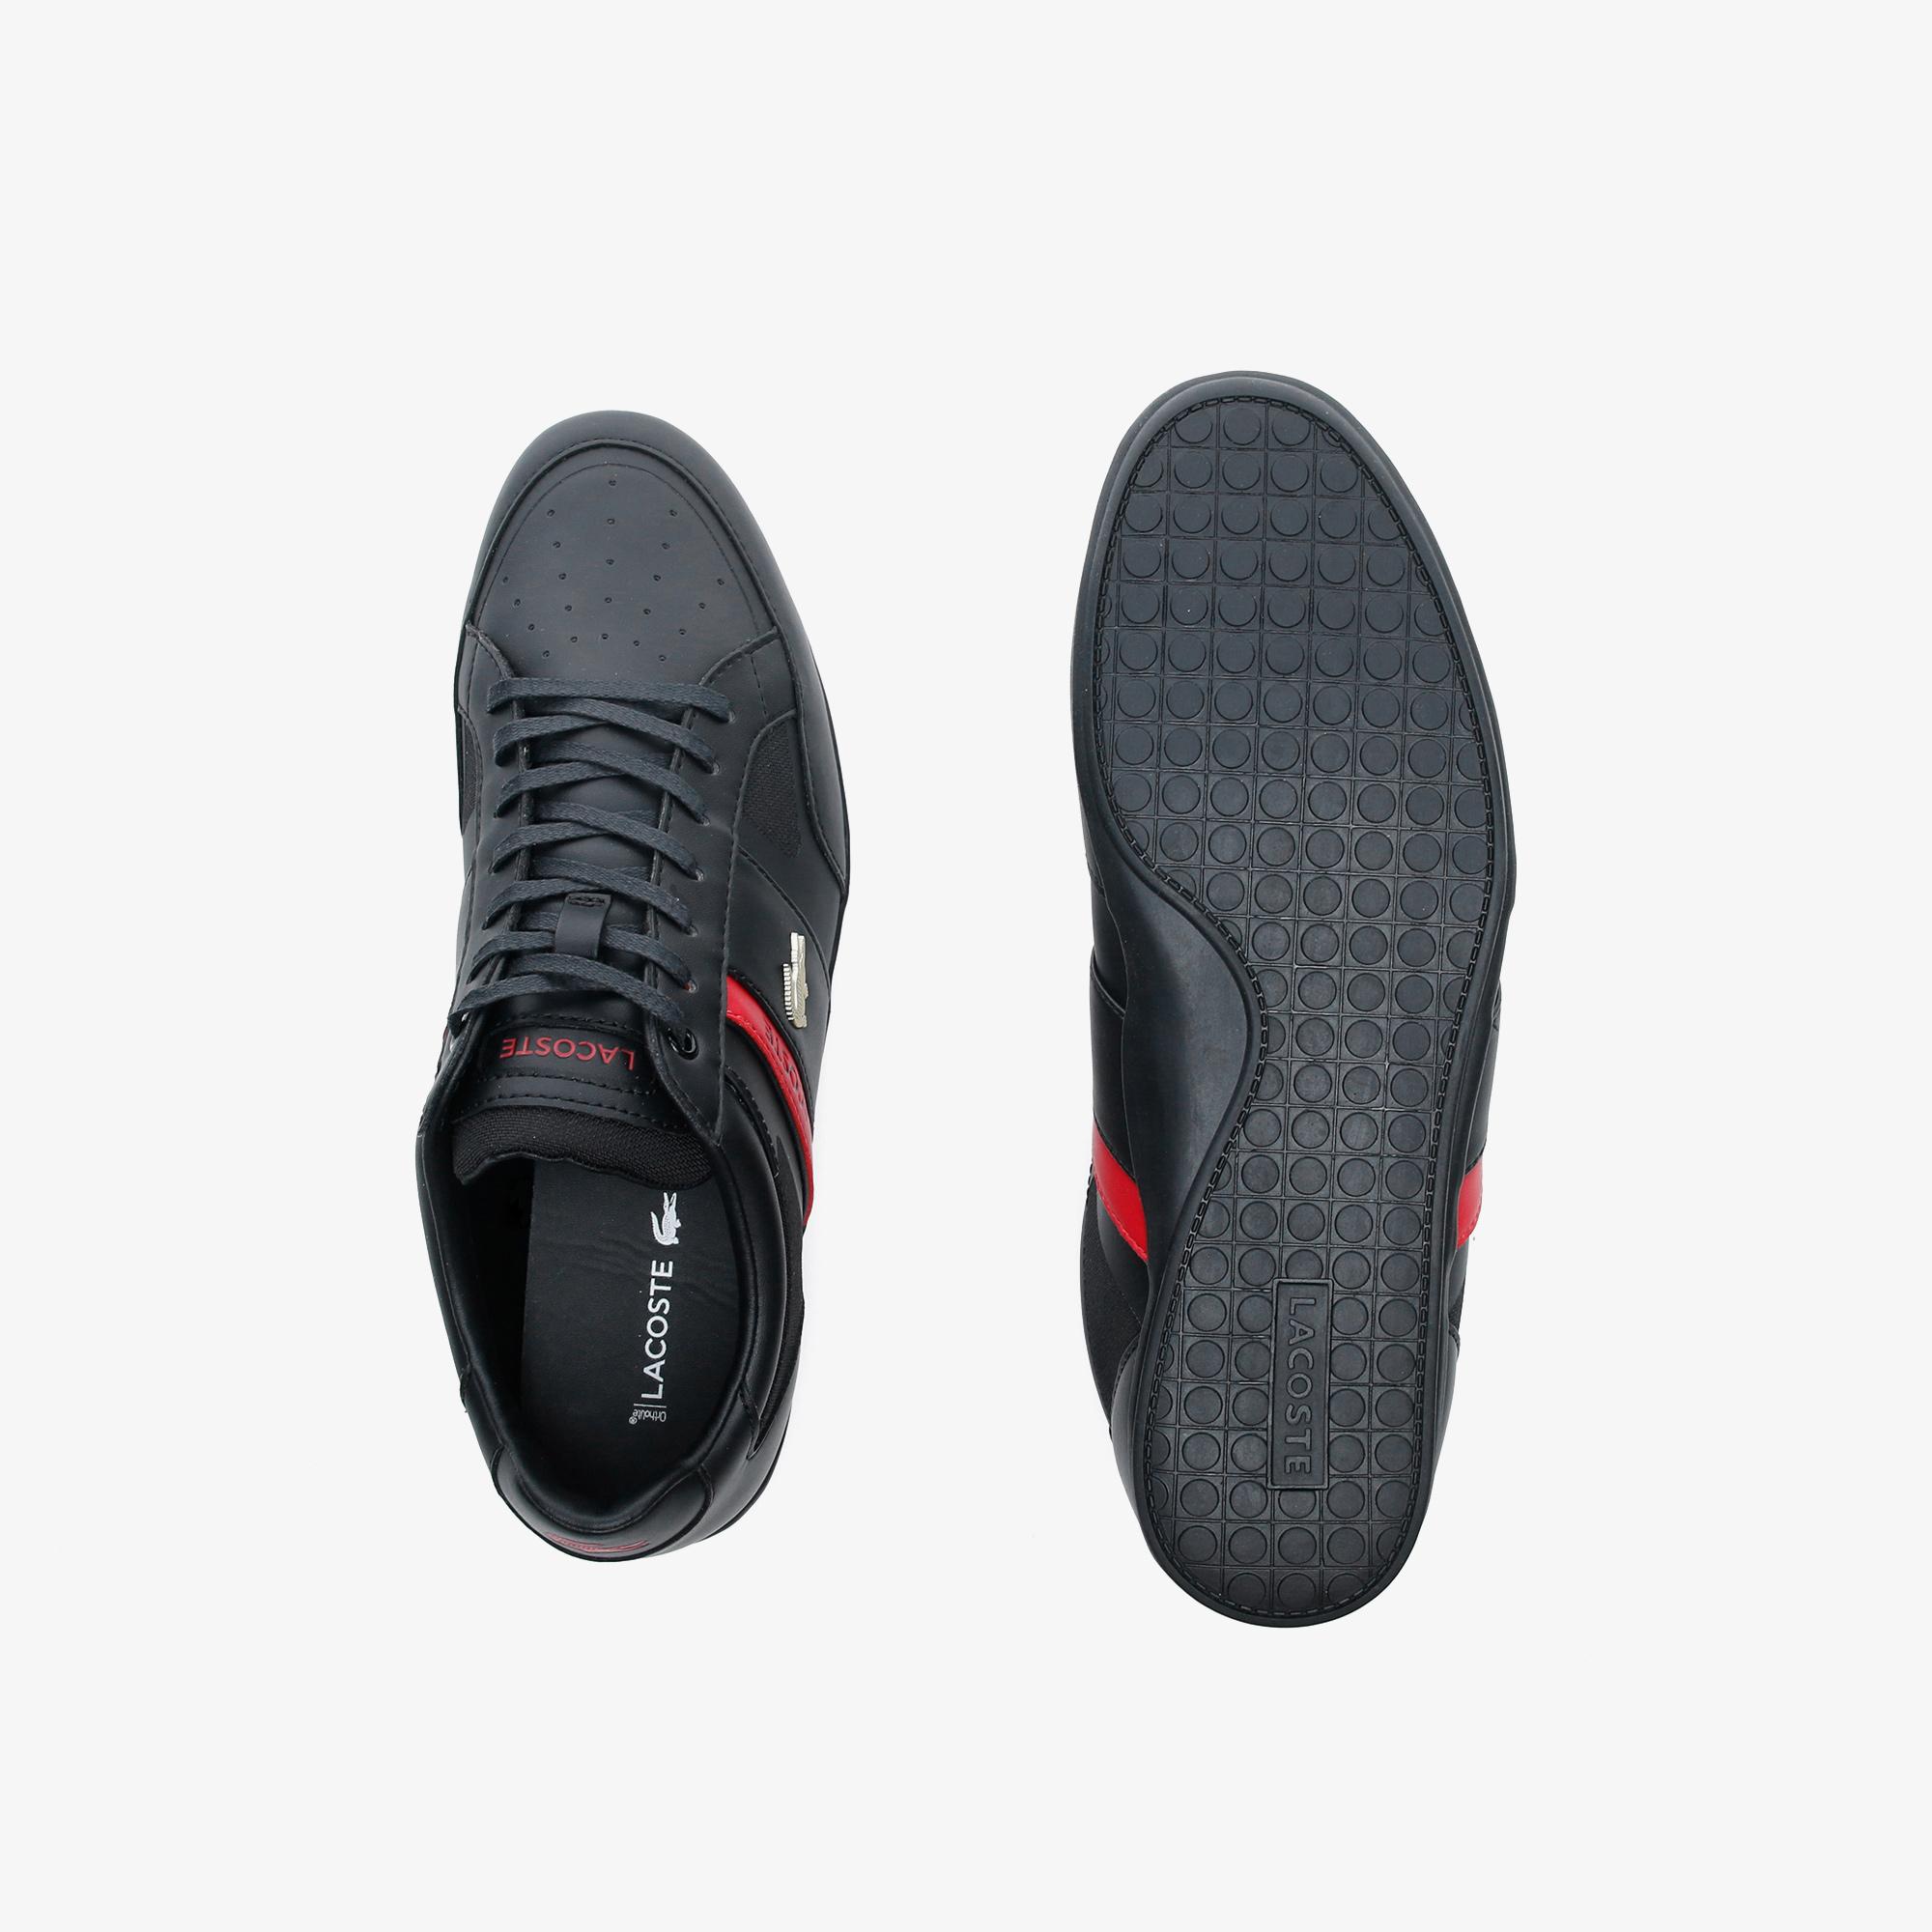 Lacoste Chaymon Tech 0120 3 Cma Erkek Siyah - Kırmızı Casual Ayakkabı. 6